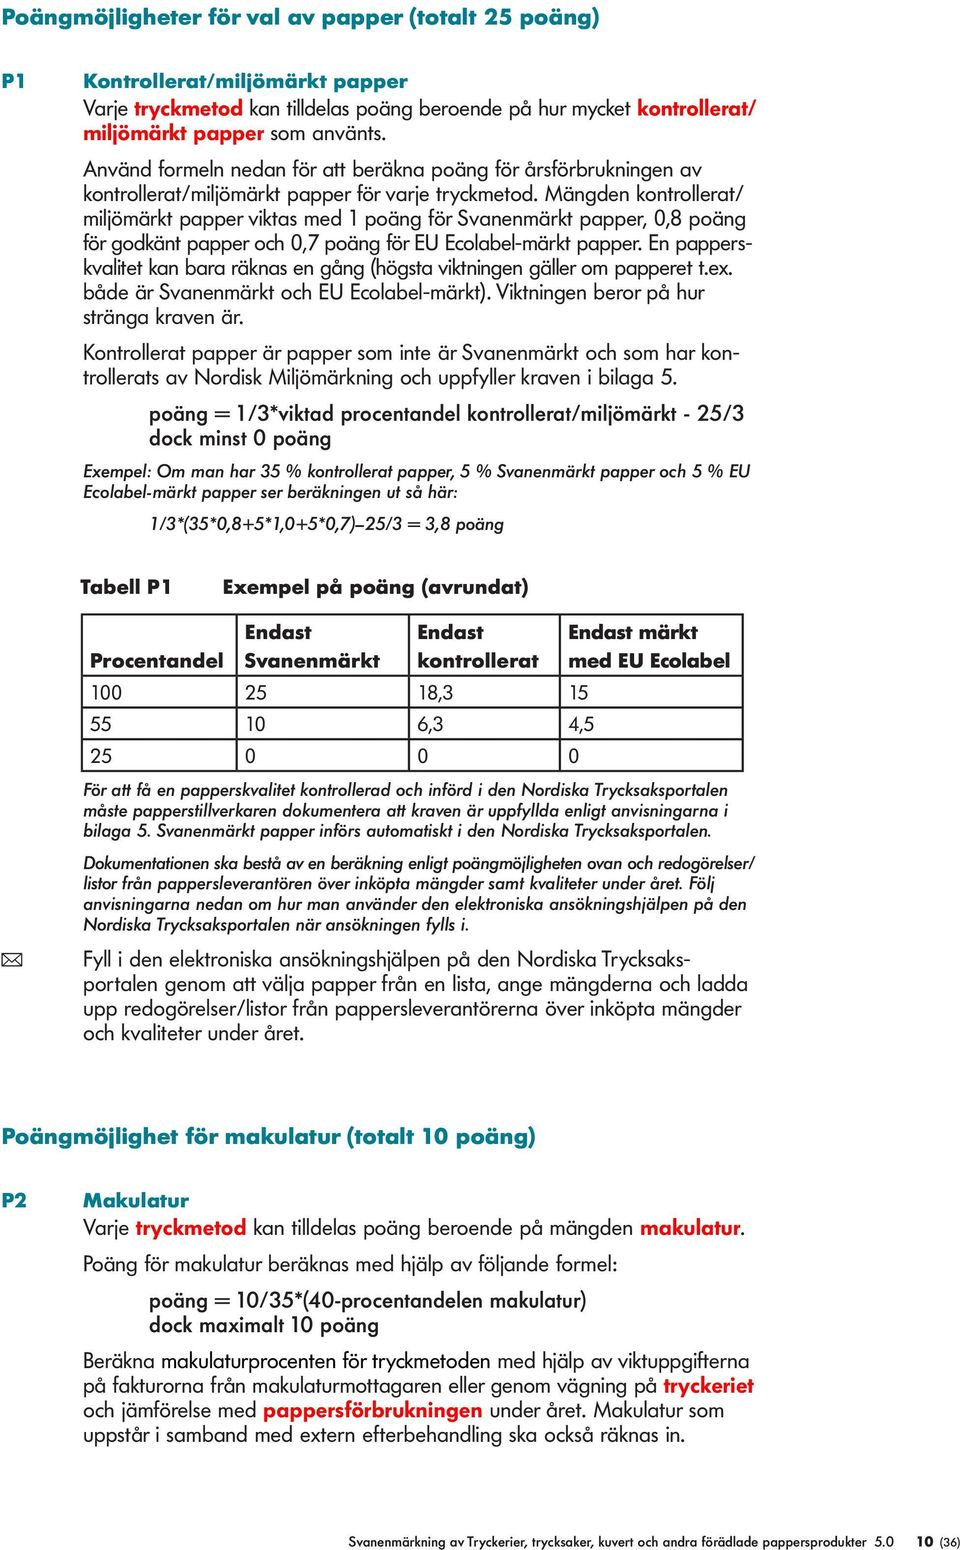 Mängden kontroerat/ mijömärkt papper viktas med 1 poäng för Svanenmärkt papper, 0,8 poäng för godkänt papper och 0,7 poäng för EU Ecoabe-märkt papper.